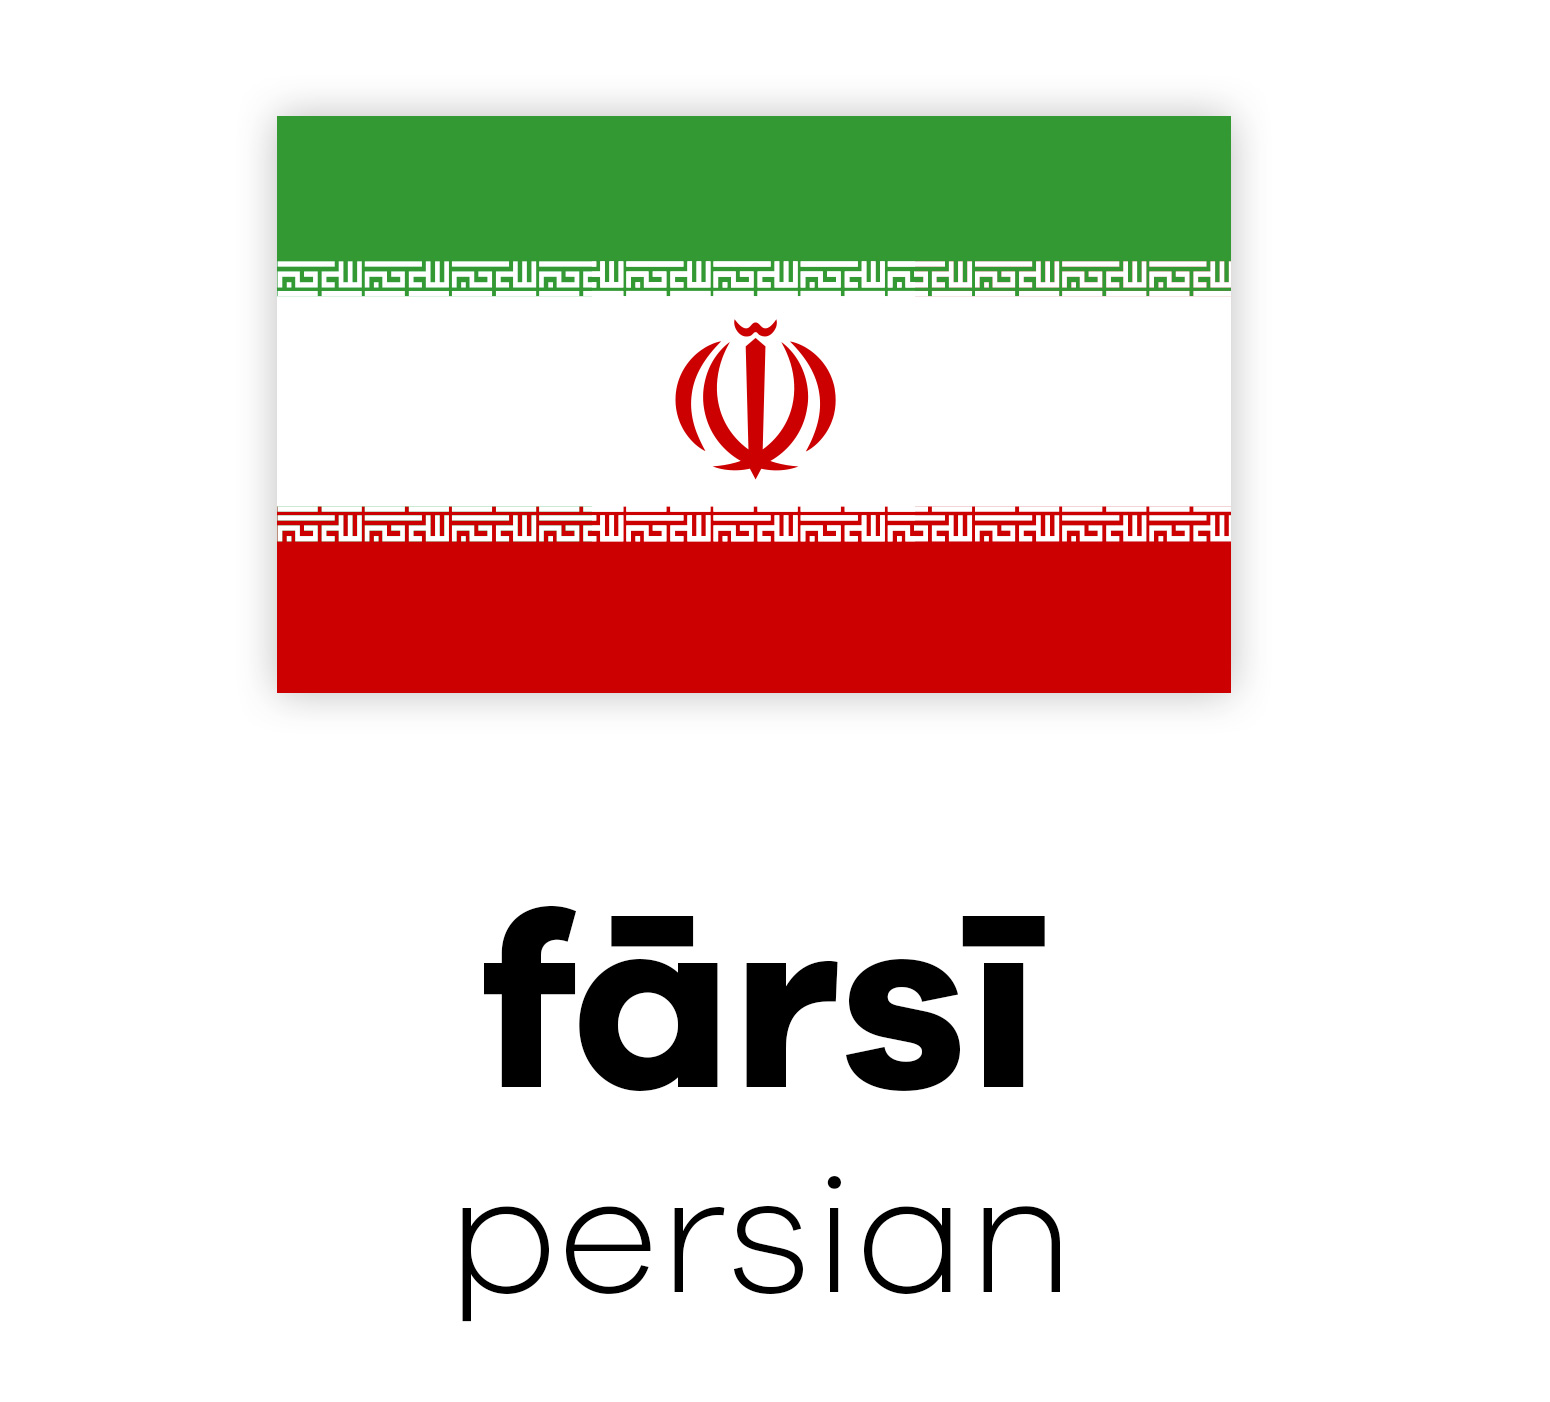 Flagge Irans mit Emblem über den Worten "fārsi persian" in schwarzer Schrift auf weißem Hintergrund.